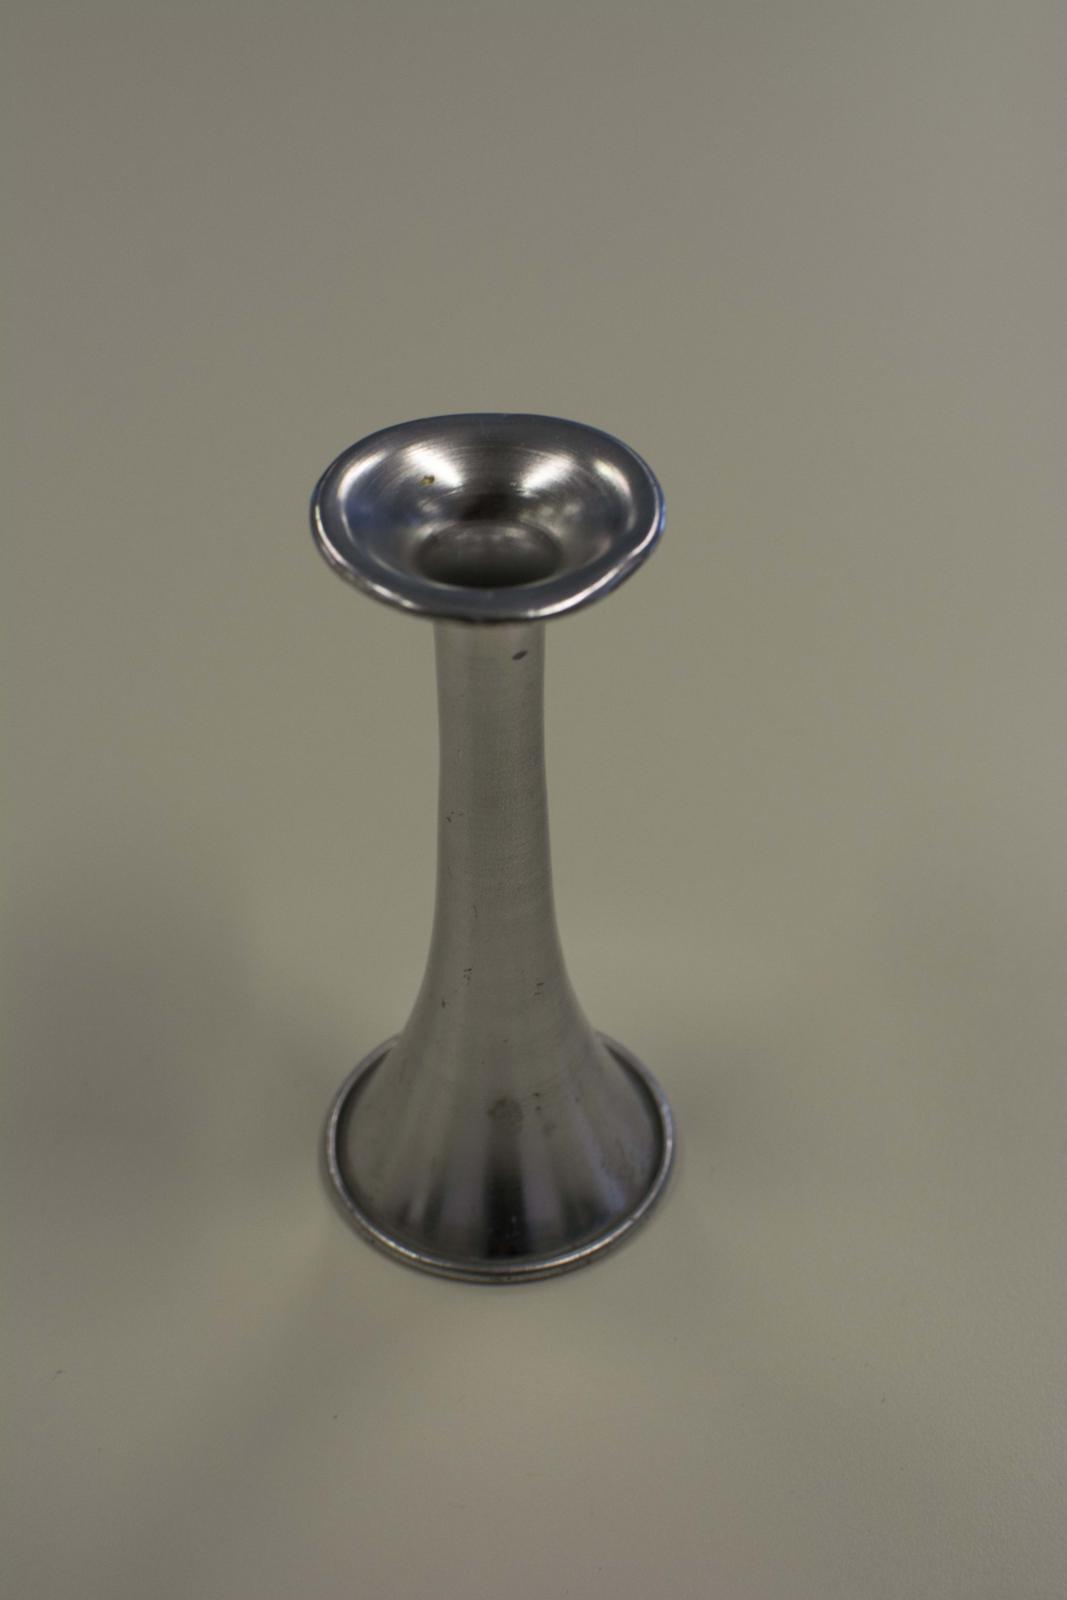 Instrumento metálico con forma de campana a cuyo extremo estrecho se adosa un disco con una oquedad interior